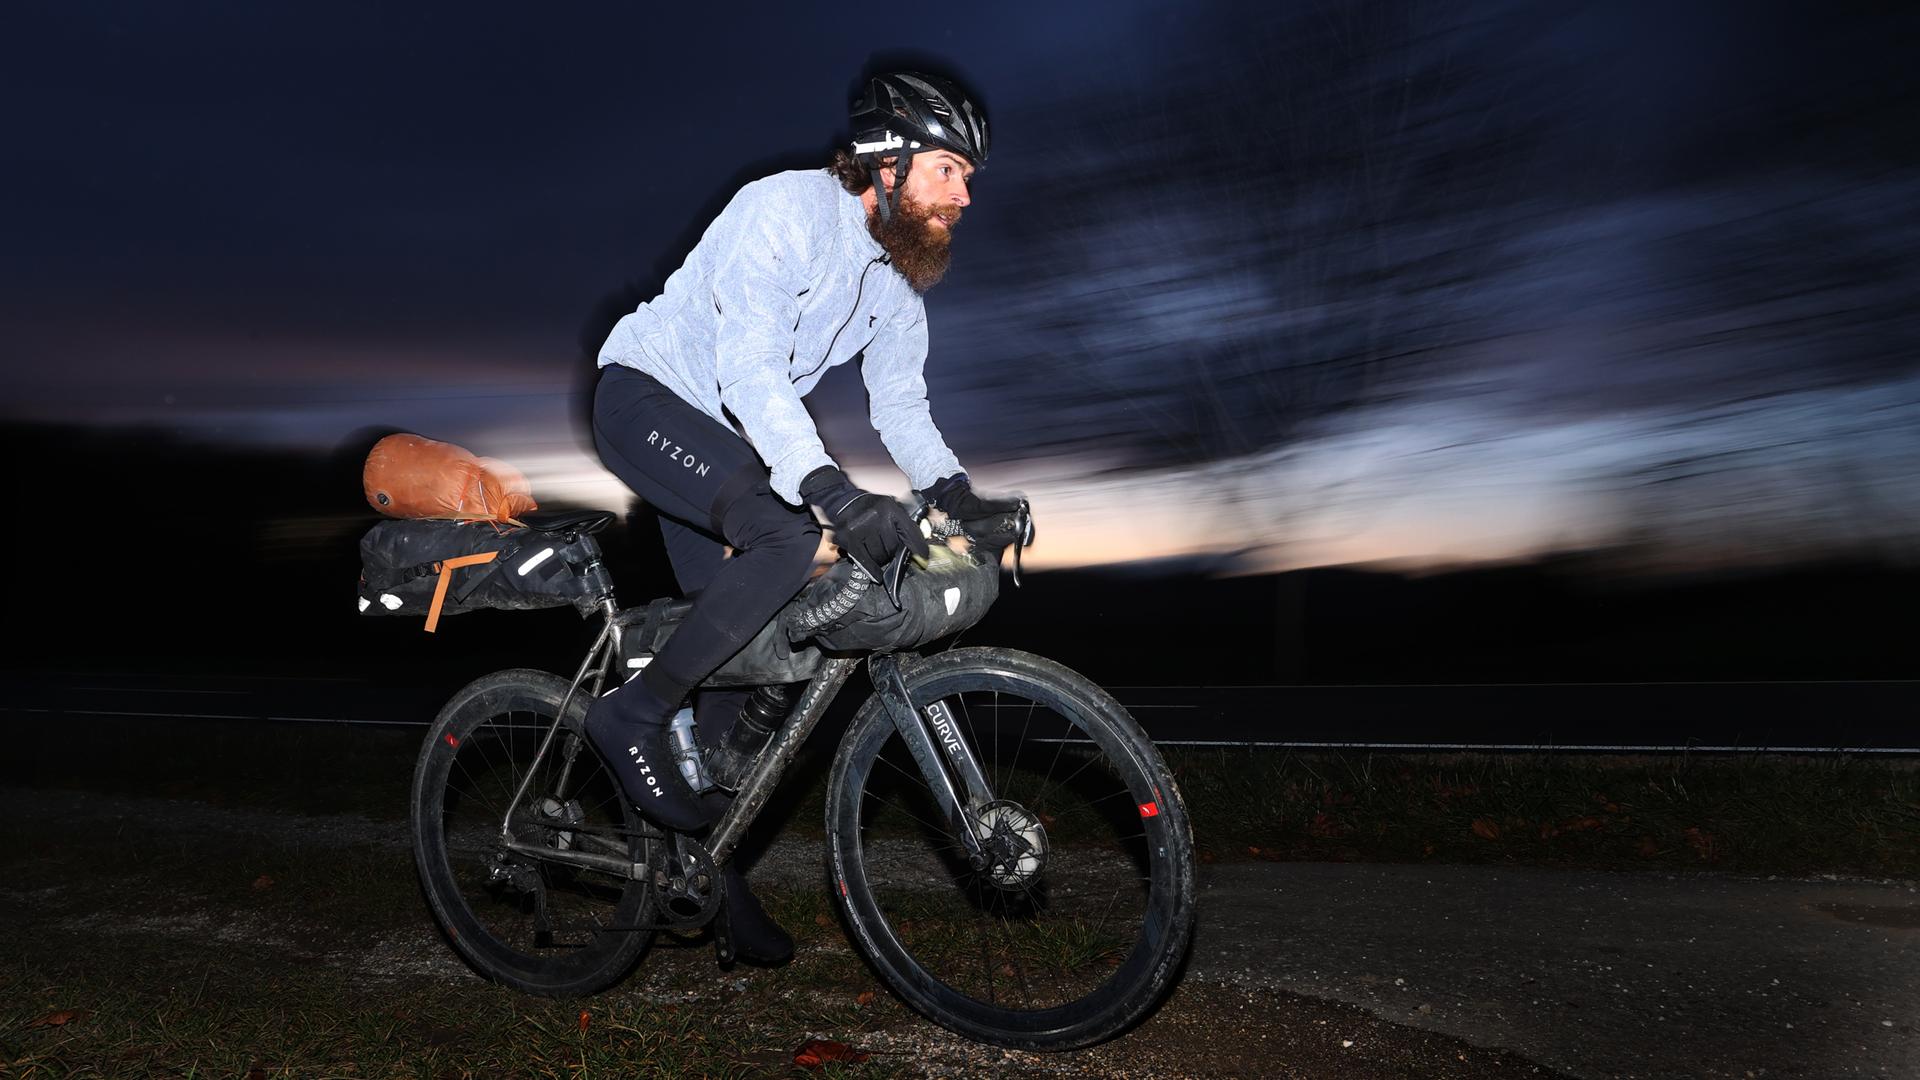 Extrem-Sportler Jonas Deichmann fährt nach seiner Grenzüberfahrt aus der Schweiz mit seinem Fahrrad auf einem Feldweg. Nach seinem Triathlon um die Welt kam Deichmann in Baden-Württemberg an.